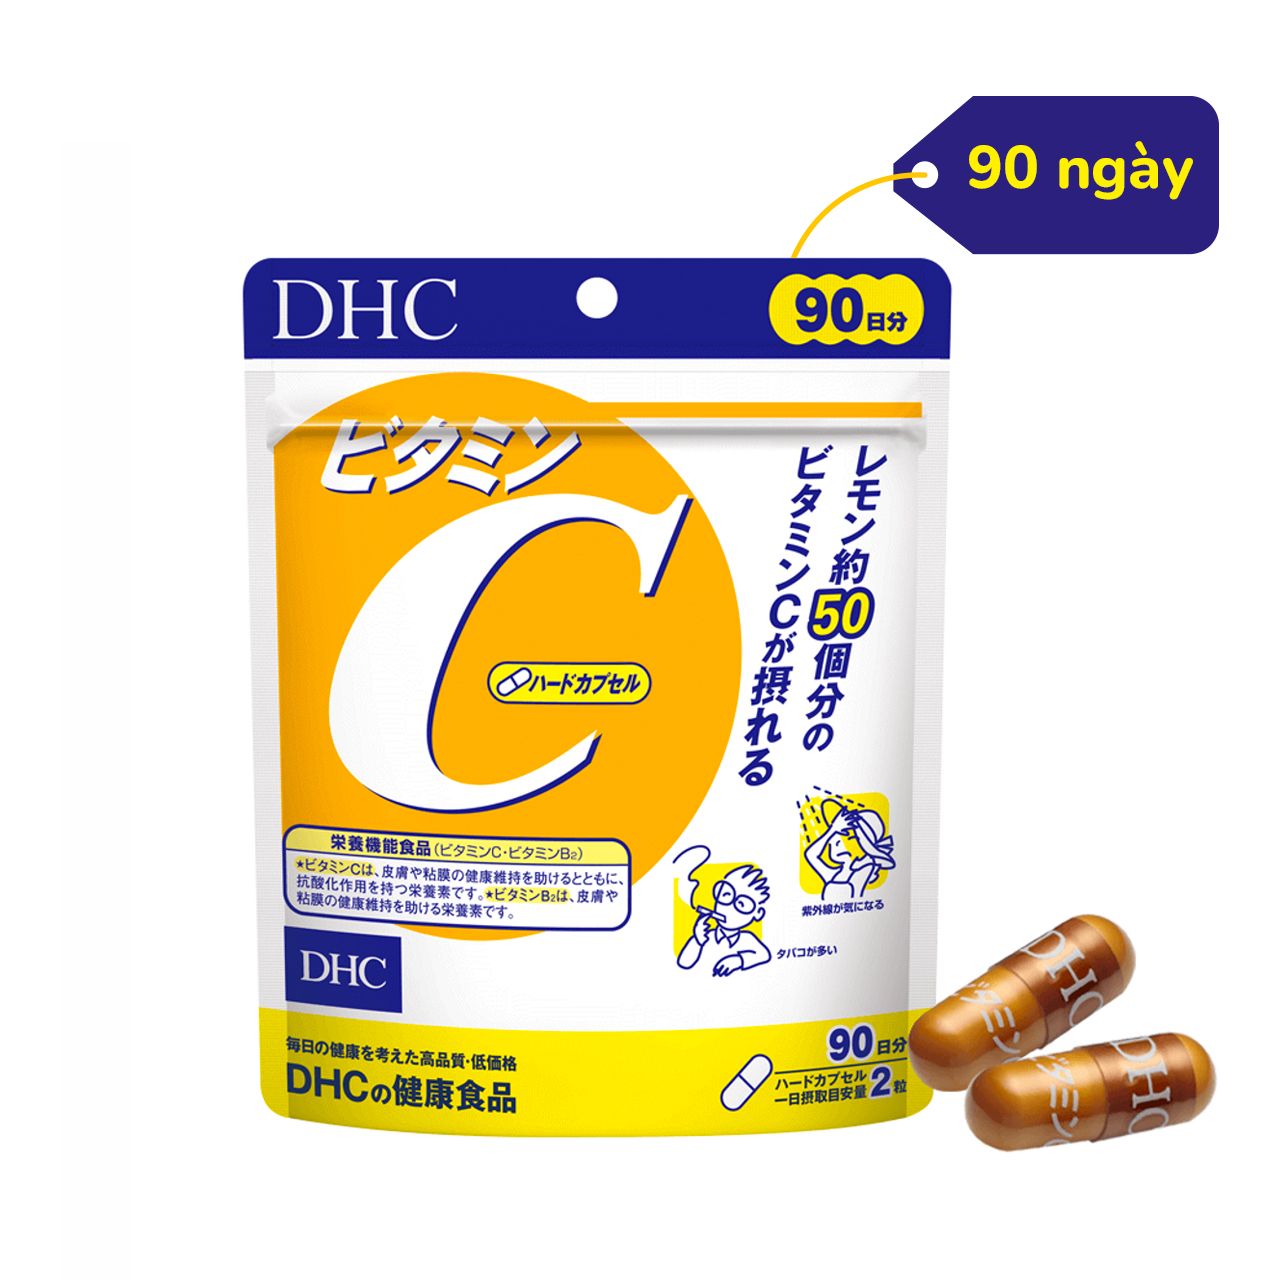 DHC Viên uống bổ sung Vitamin C 90 ngày – DADA Beauty